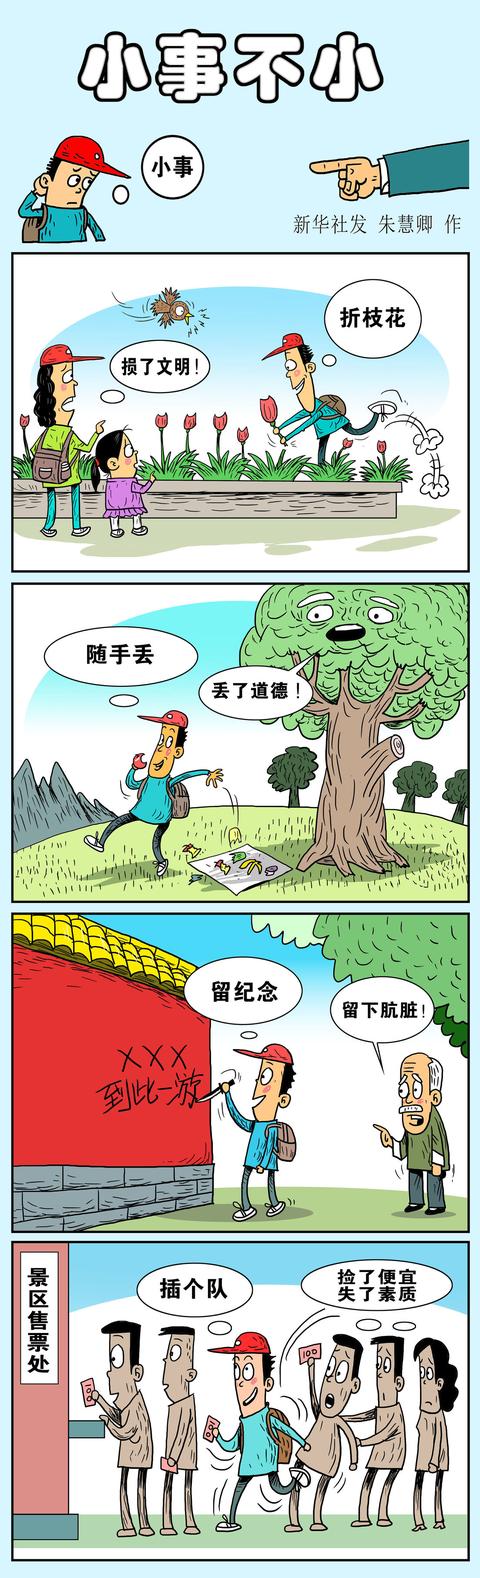 「图表·漫画」「国庆节」小事不小(竖版)